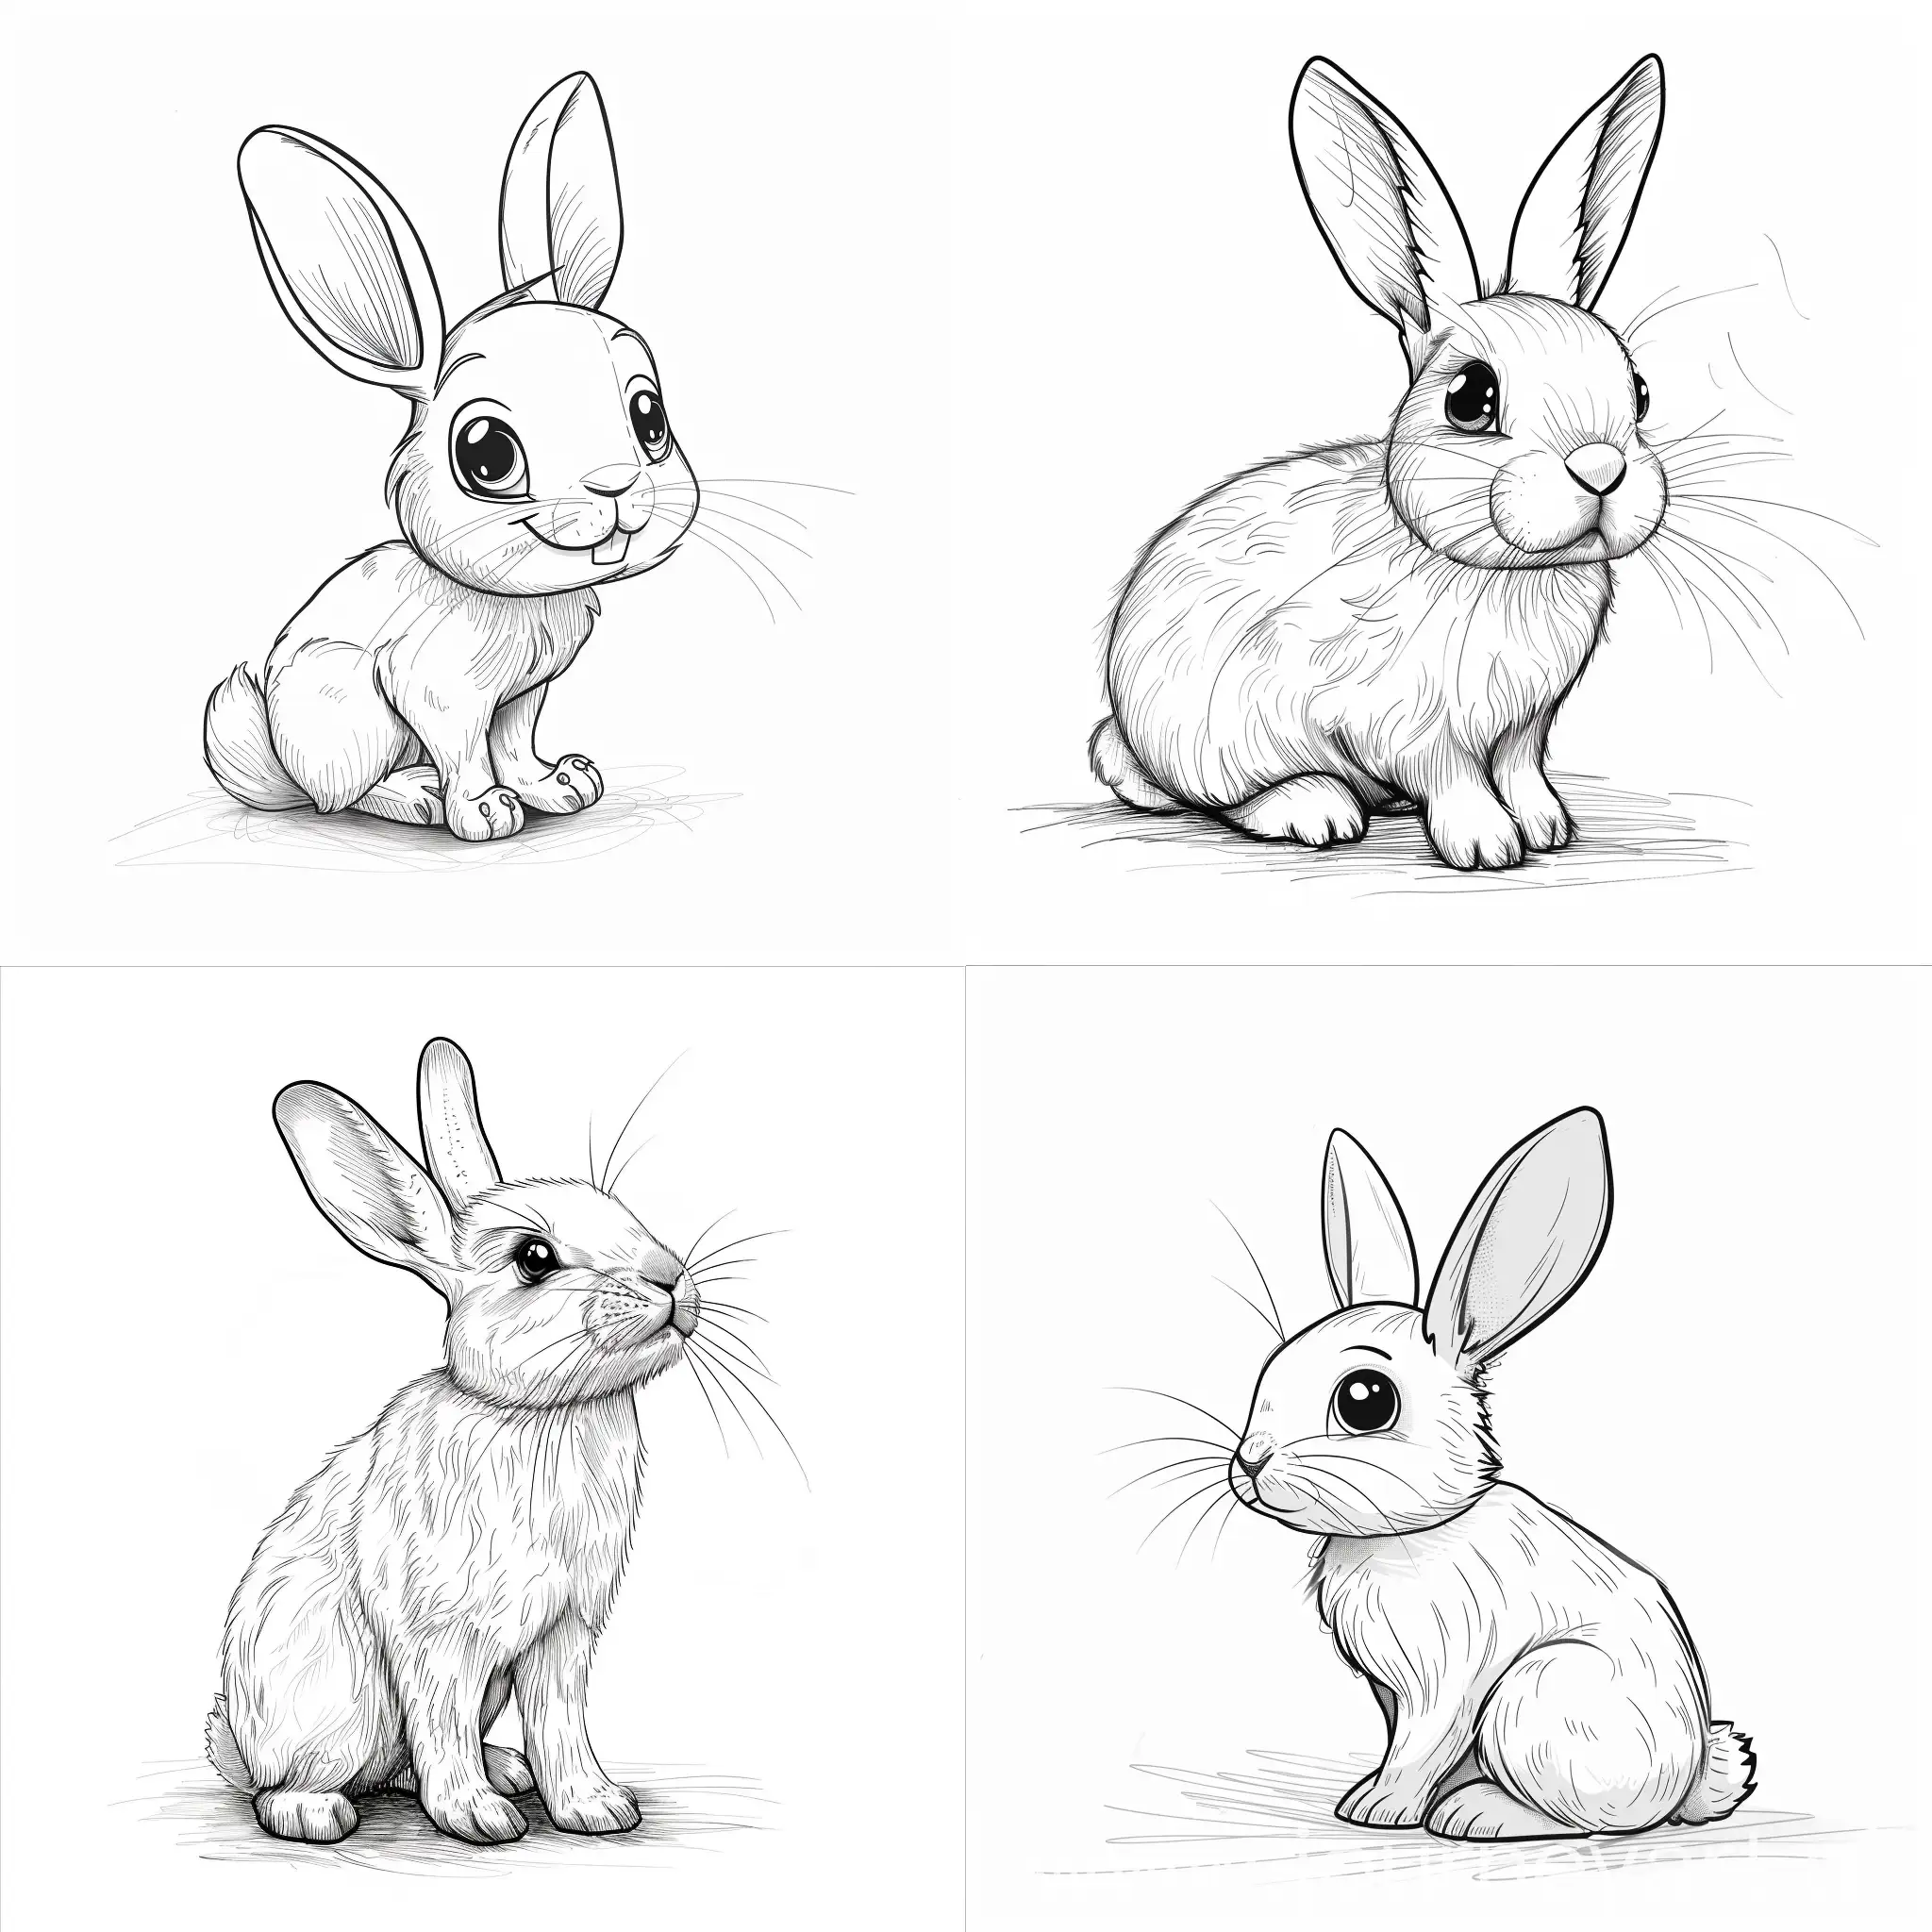 Dibuja un conejo lindo para libro de colorear de niños pequeños, sin escalas de grises en una hoja blanca con fondo liso sin dibujos